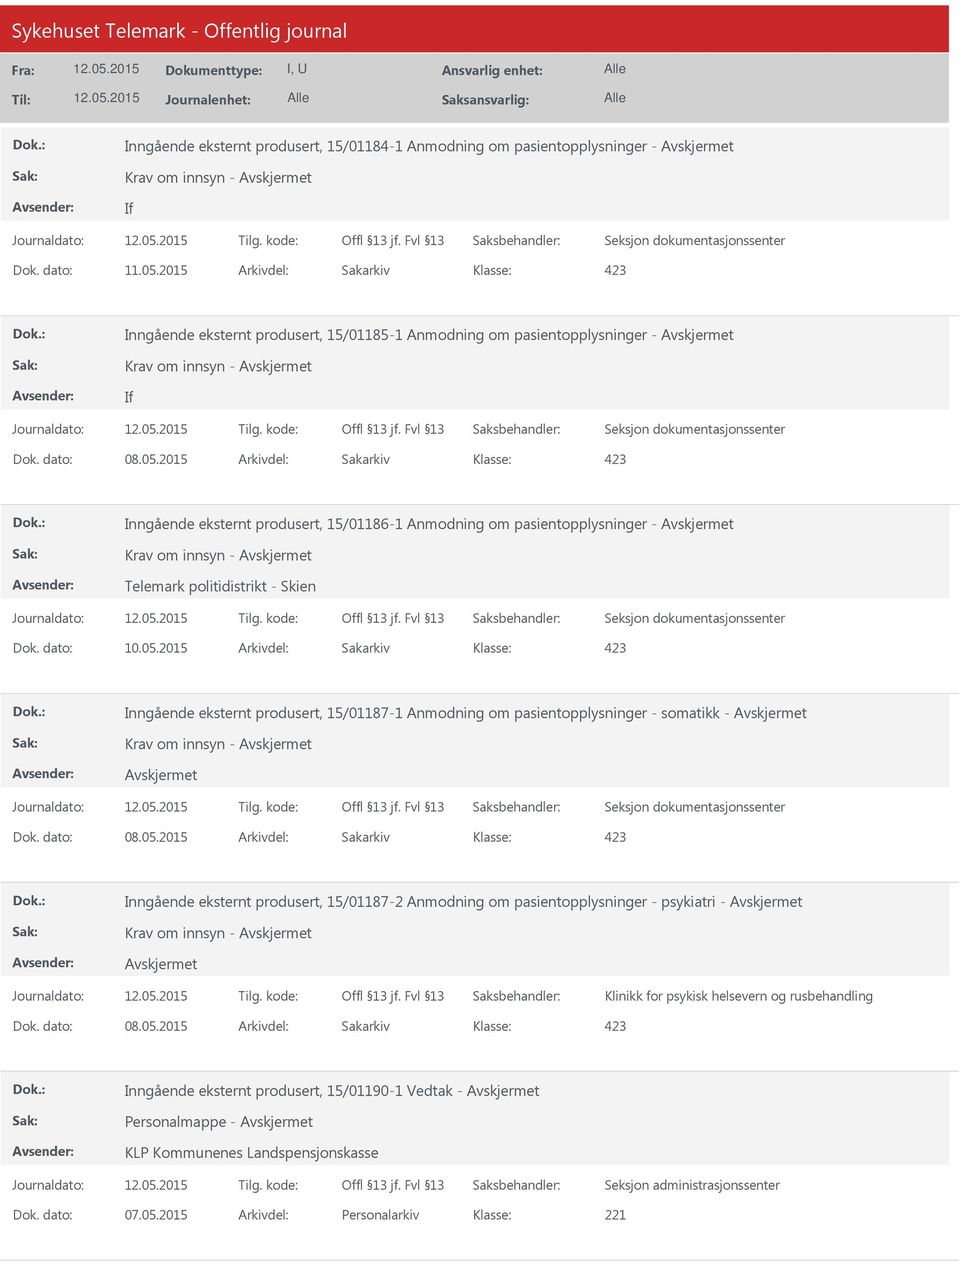 2015 Arkivdel: Sakarkiv Inngående eksternt produsert, 15/01187-1 Anmodning om pasientopplysninger - somatikk - Krav om innsyn - Inngående eksternt produsert, 15/01187-2 Anmodning om